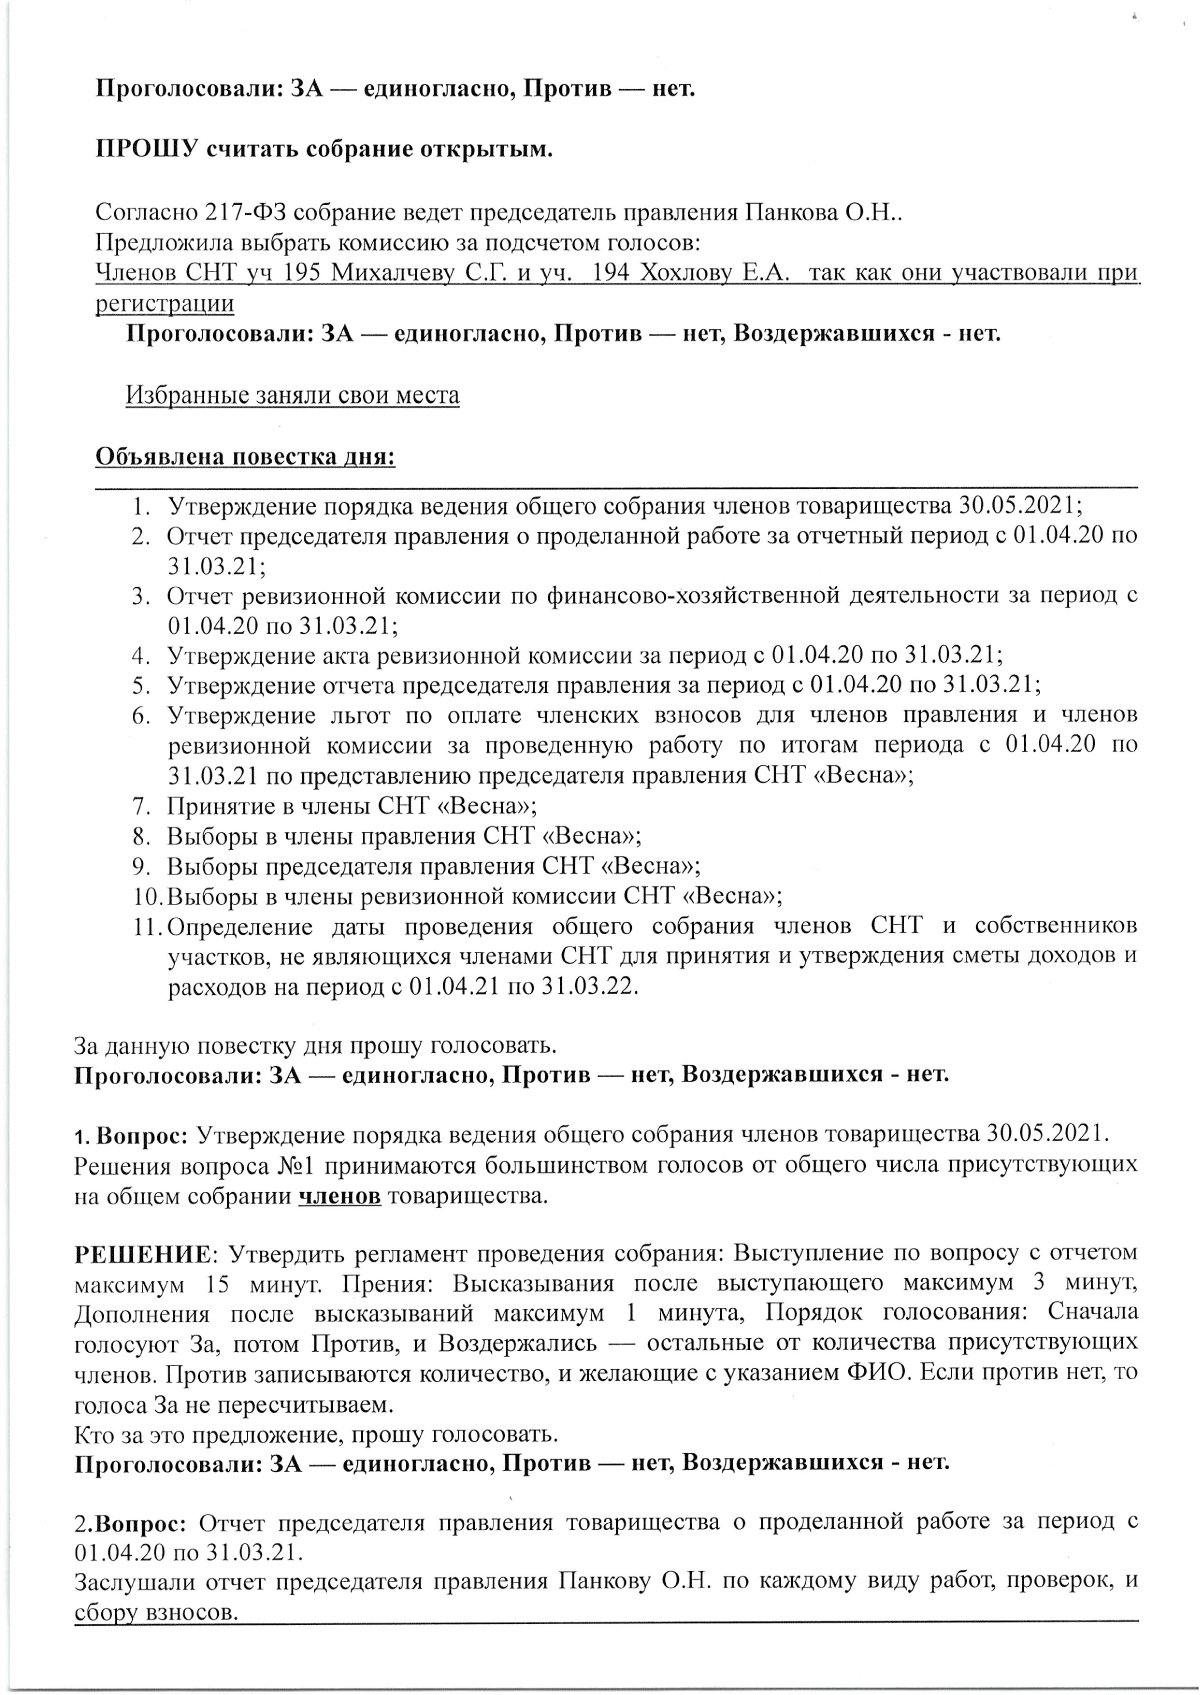 Протокол N1/2021. Общего собрания